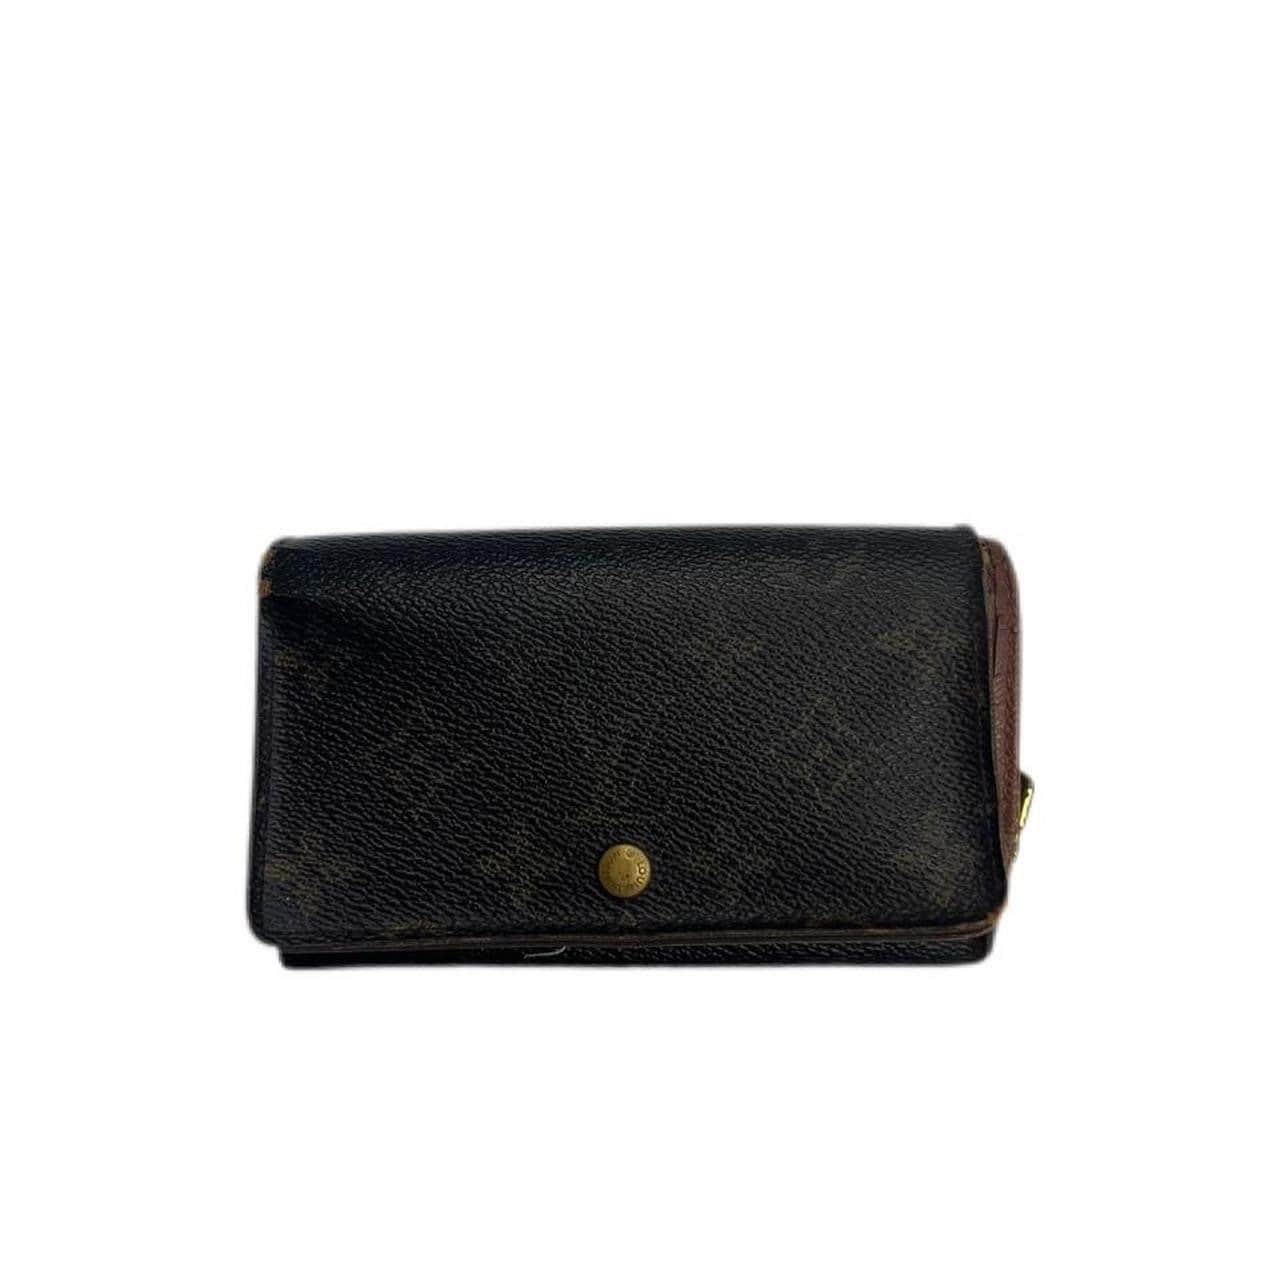 Louis Vuitton Leather Wallet - Black Wallets, Accessories - LOU672051